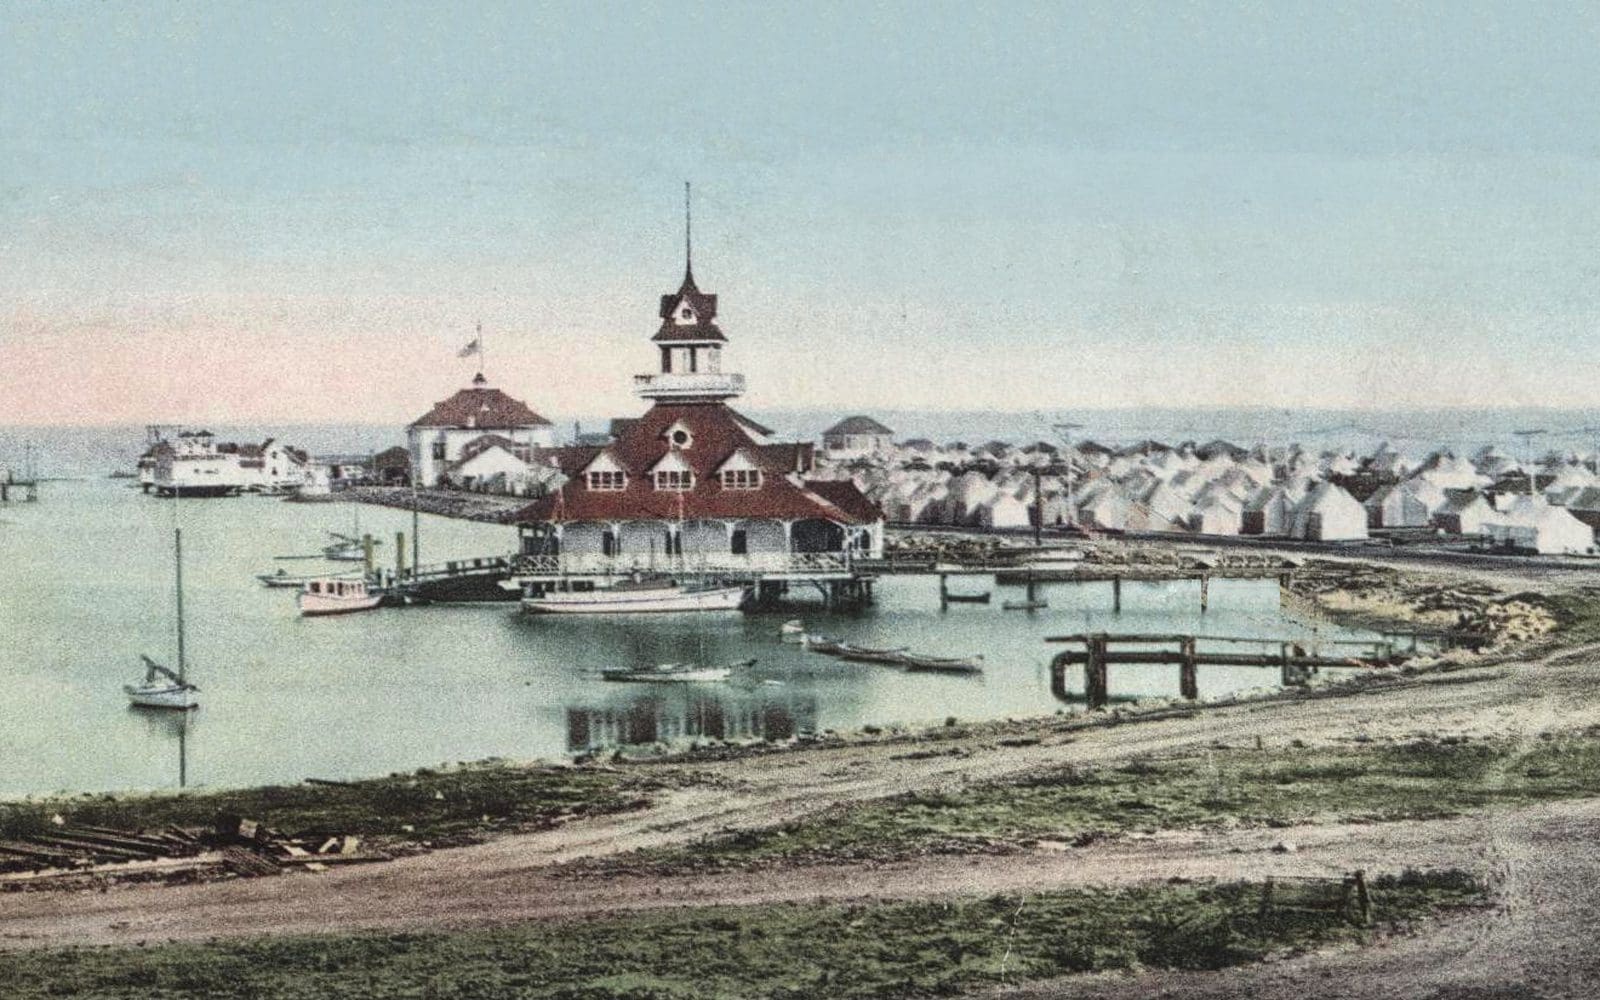 boathouse 1905